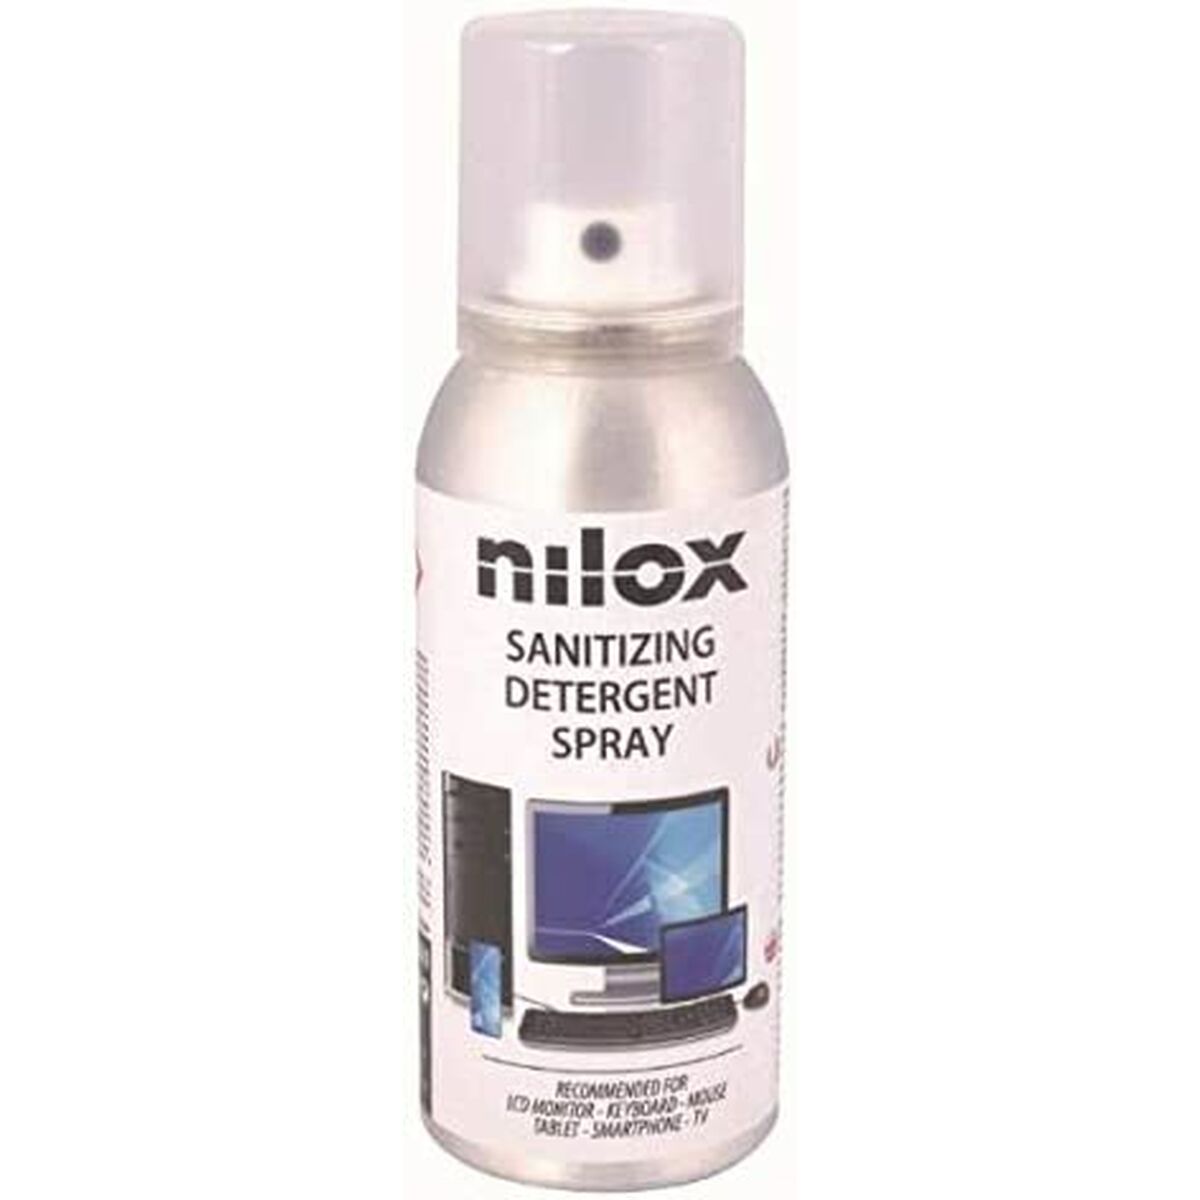 Verdichtendes Spray Nilox NXA04016